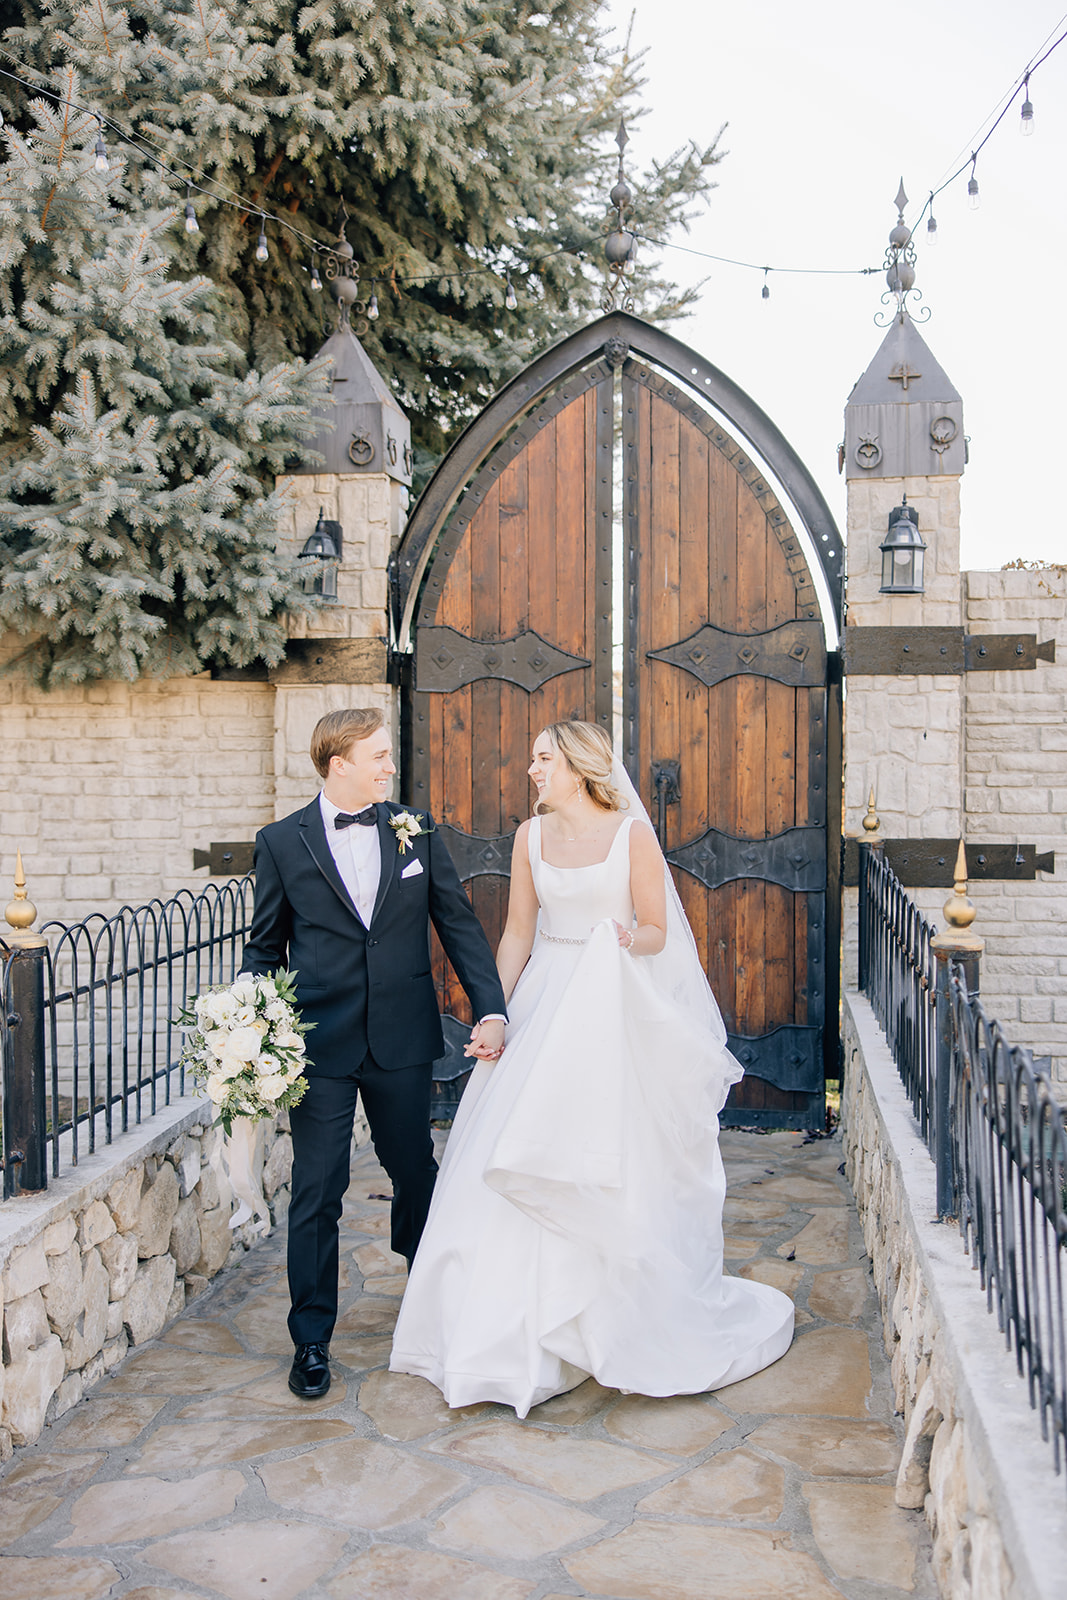 Wedding Venues Castle | Fairytale wedding venues for brides